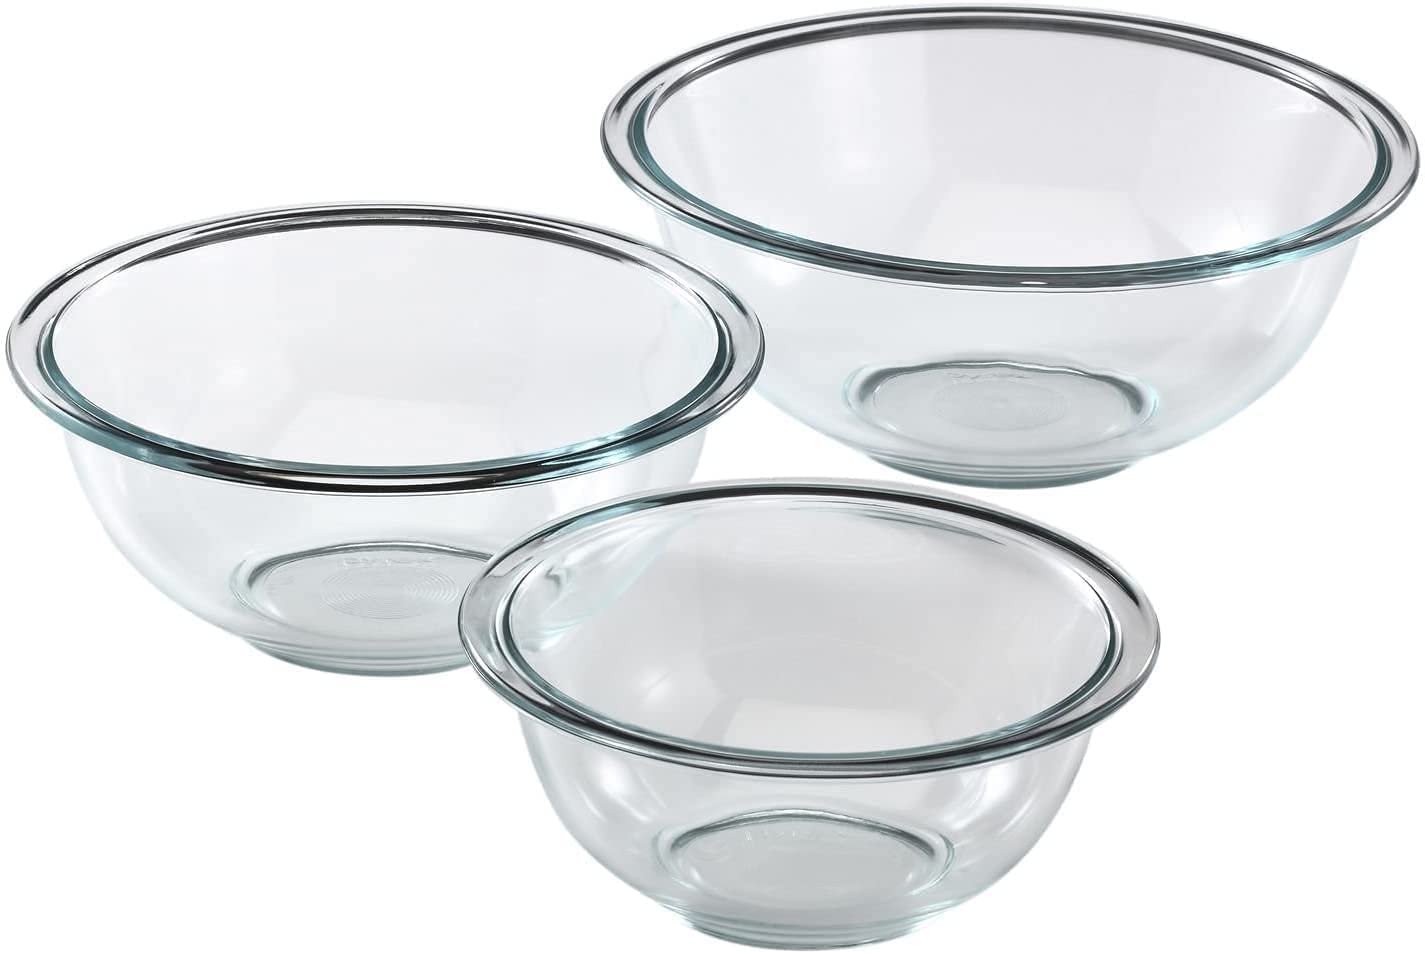 Pyrex Glass Daily Mixing Bowl Cookware Set, 3-Piece